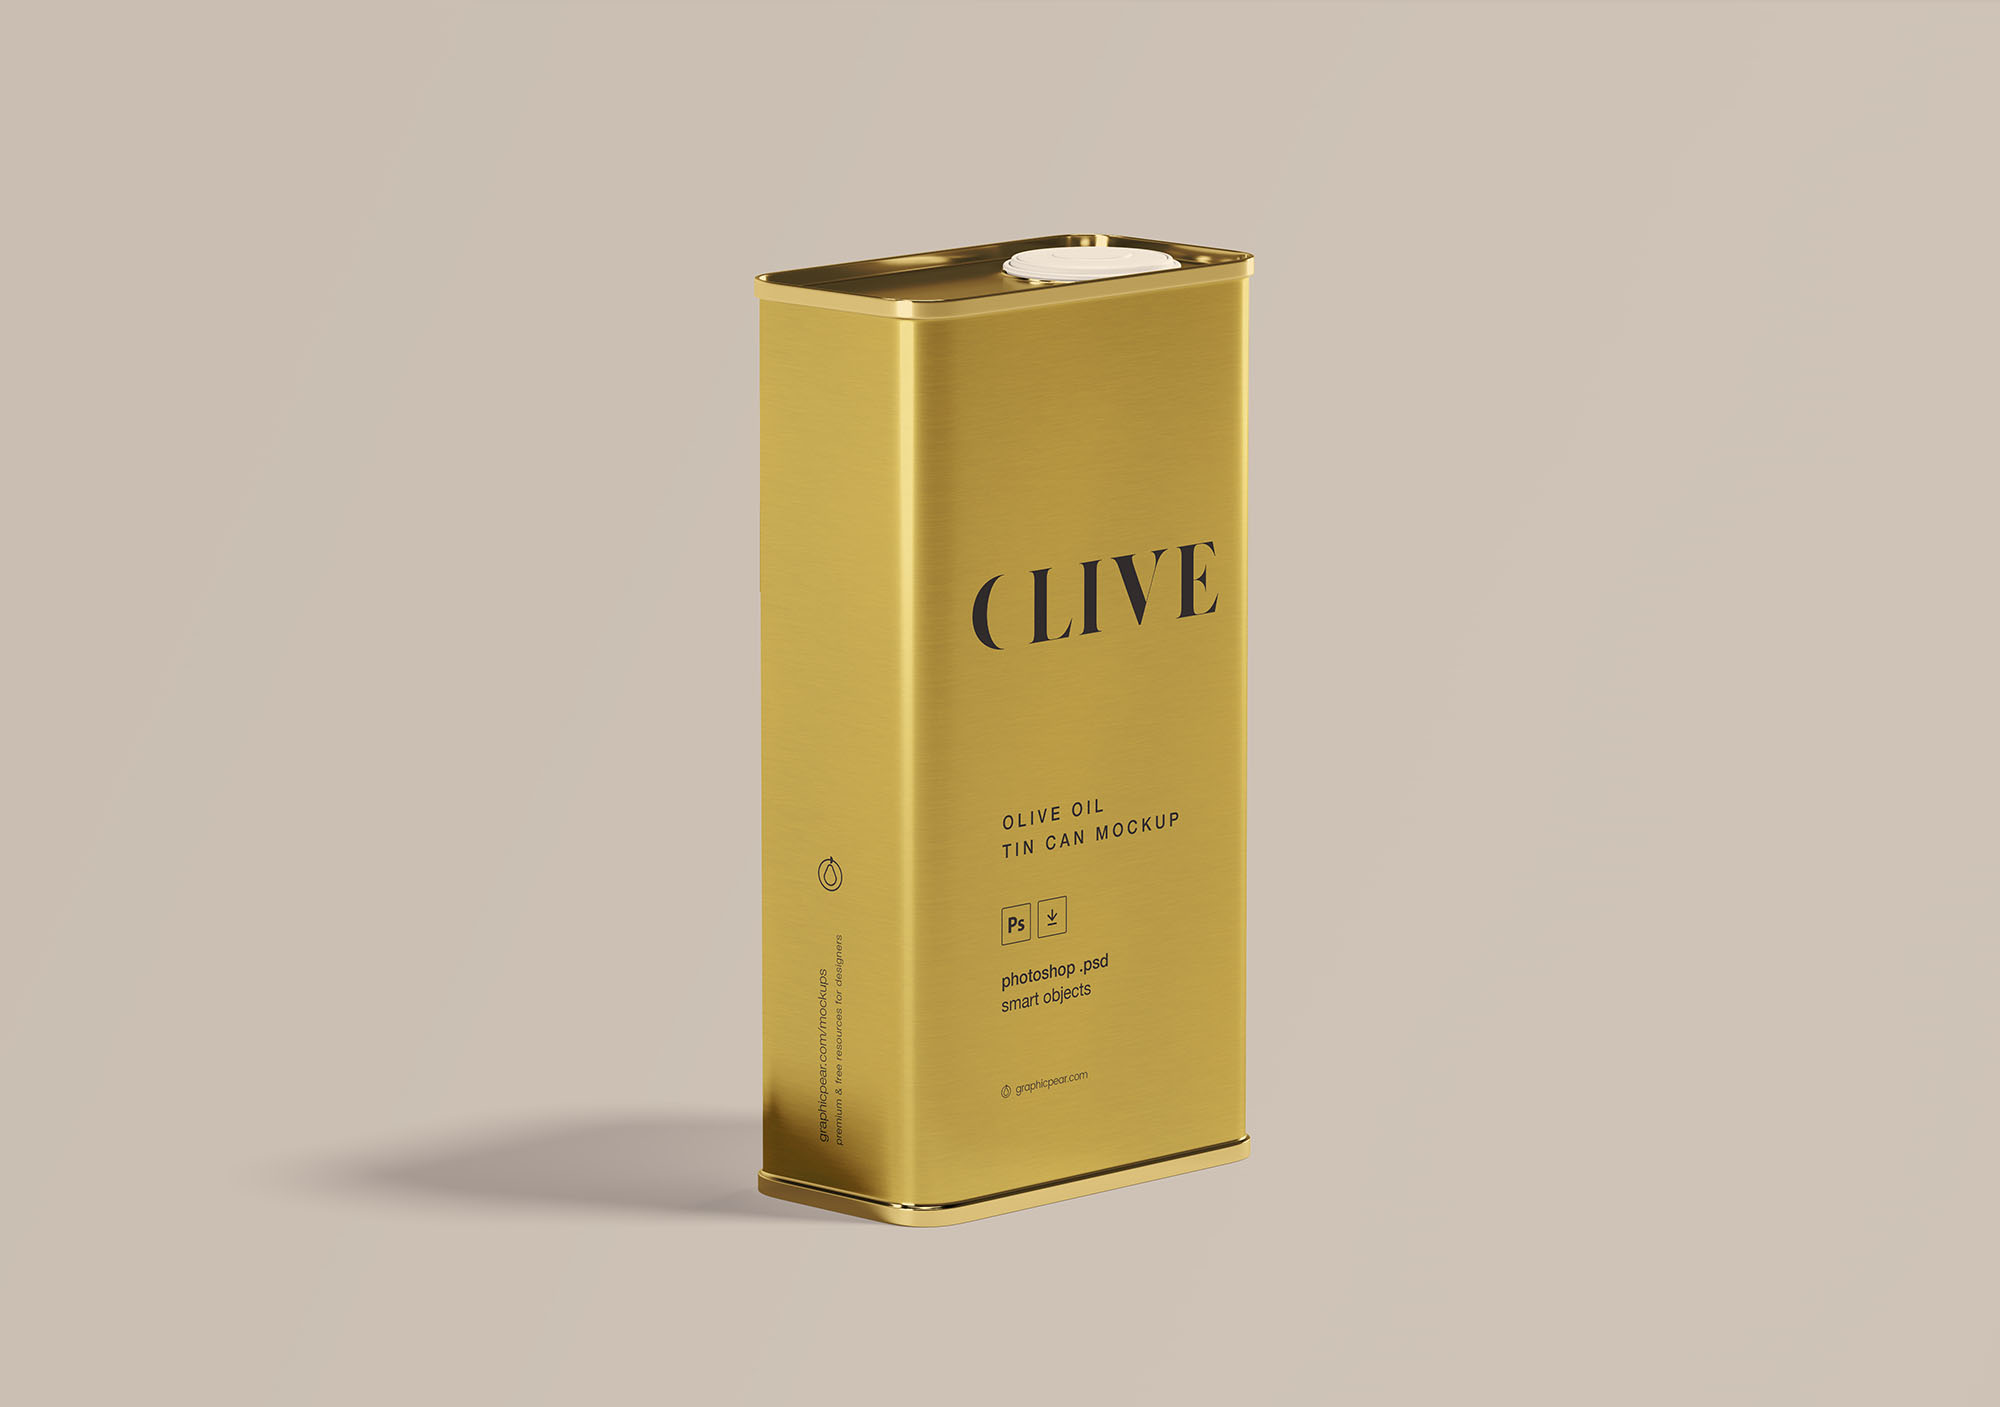 橄榄油罐头包装外观设计样机模板 Olive Oil Tin Can Mockup插图